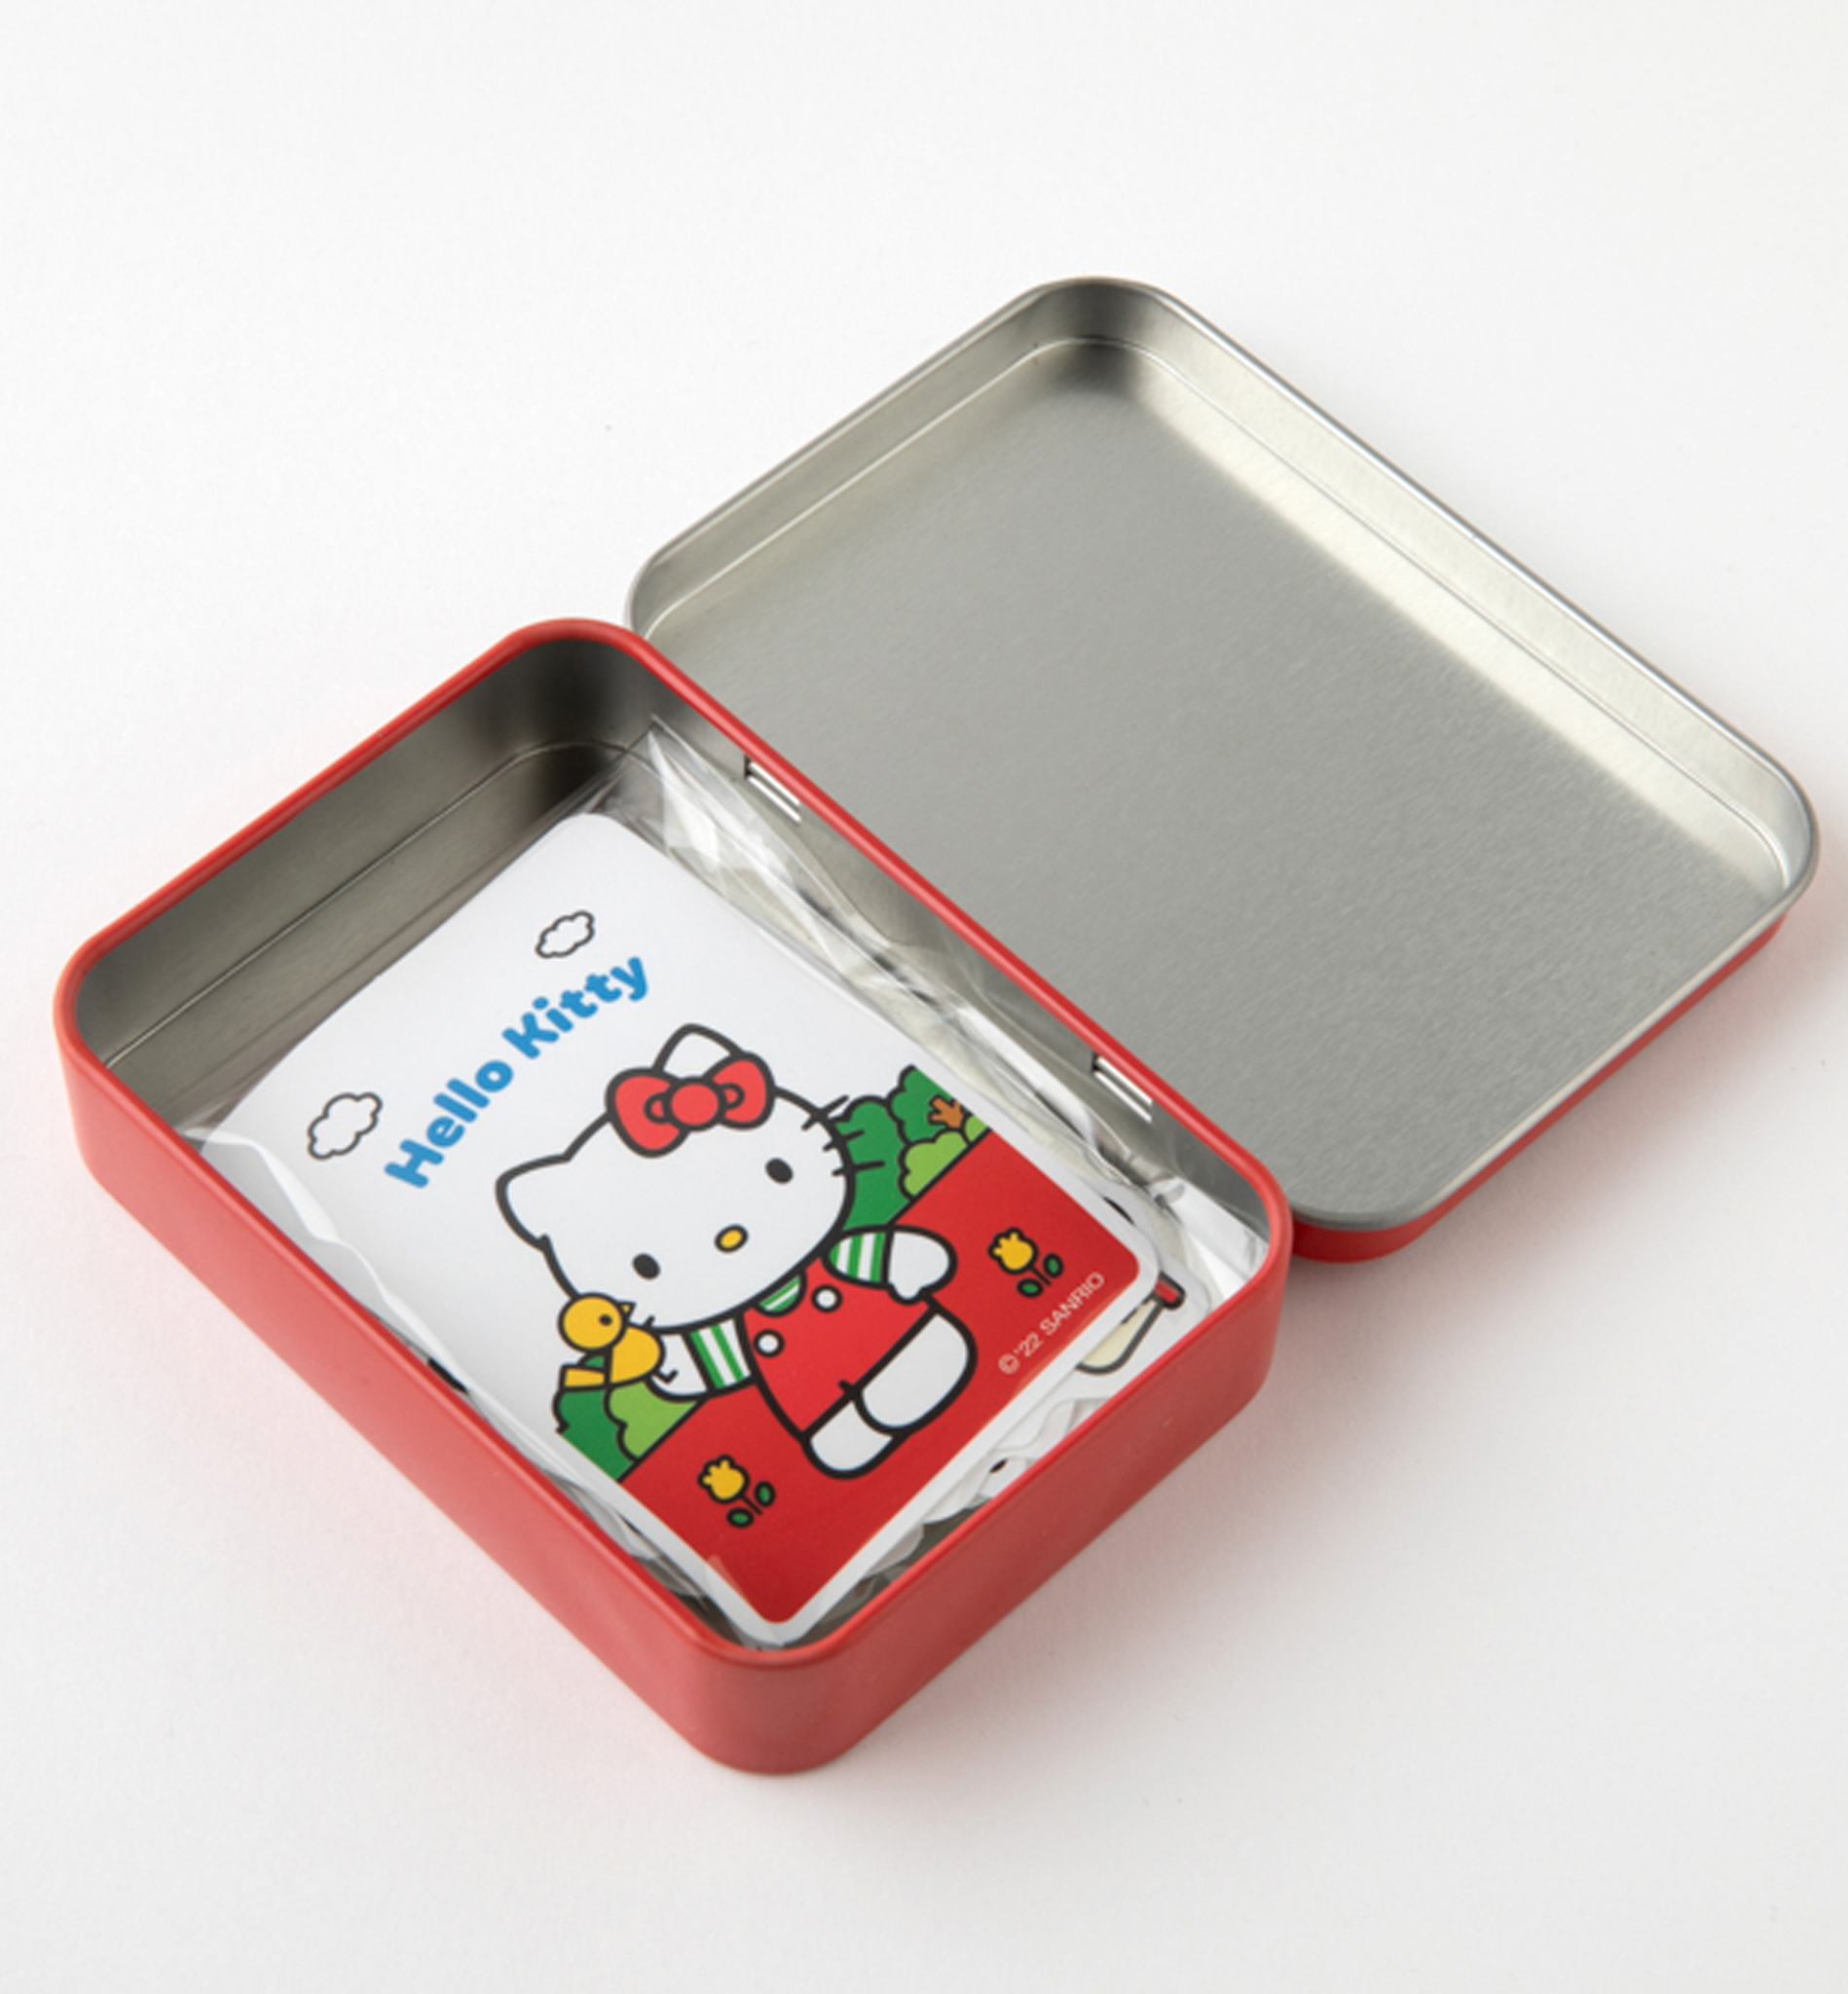 Sanrio Tin Case Sticker Pack [40 Stickers]